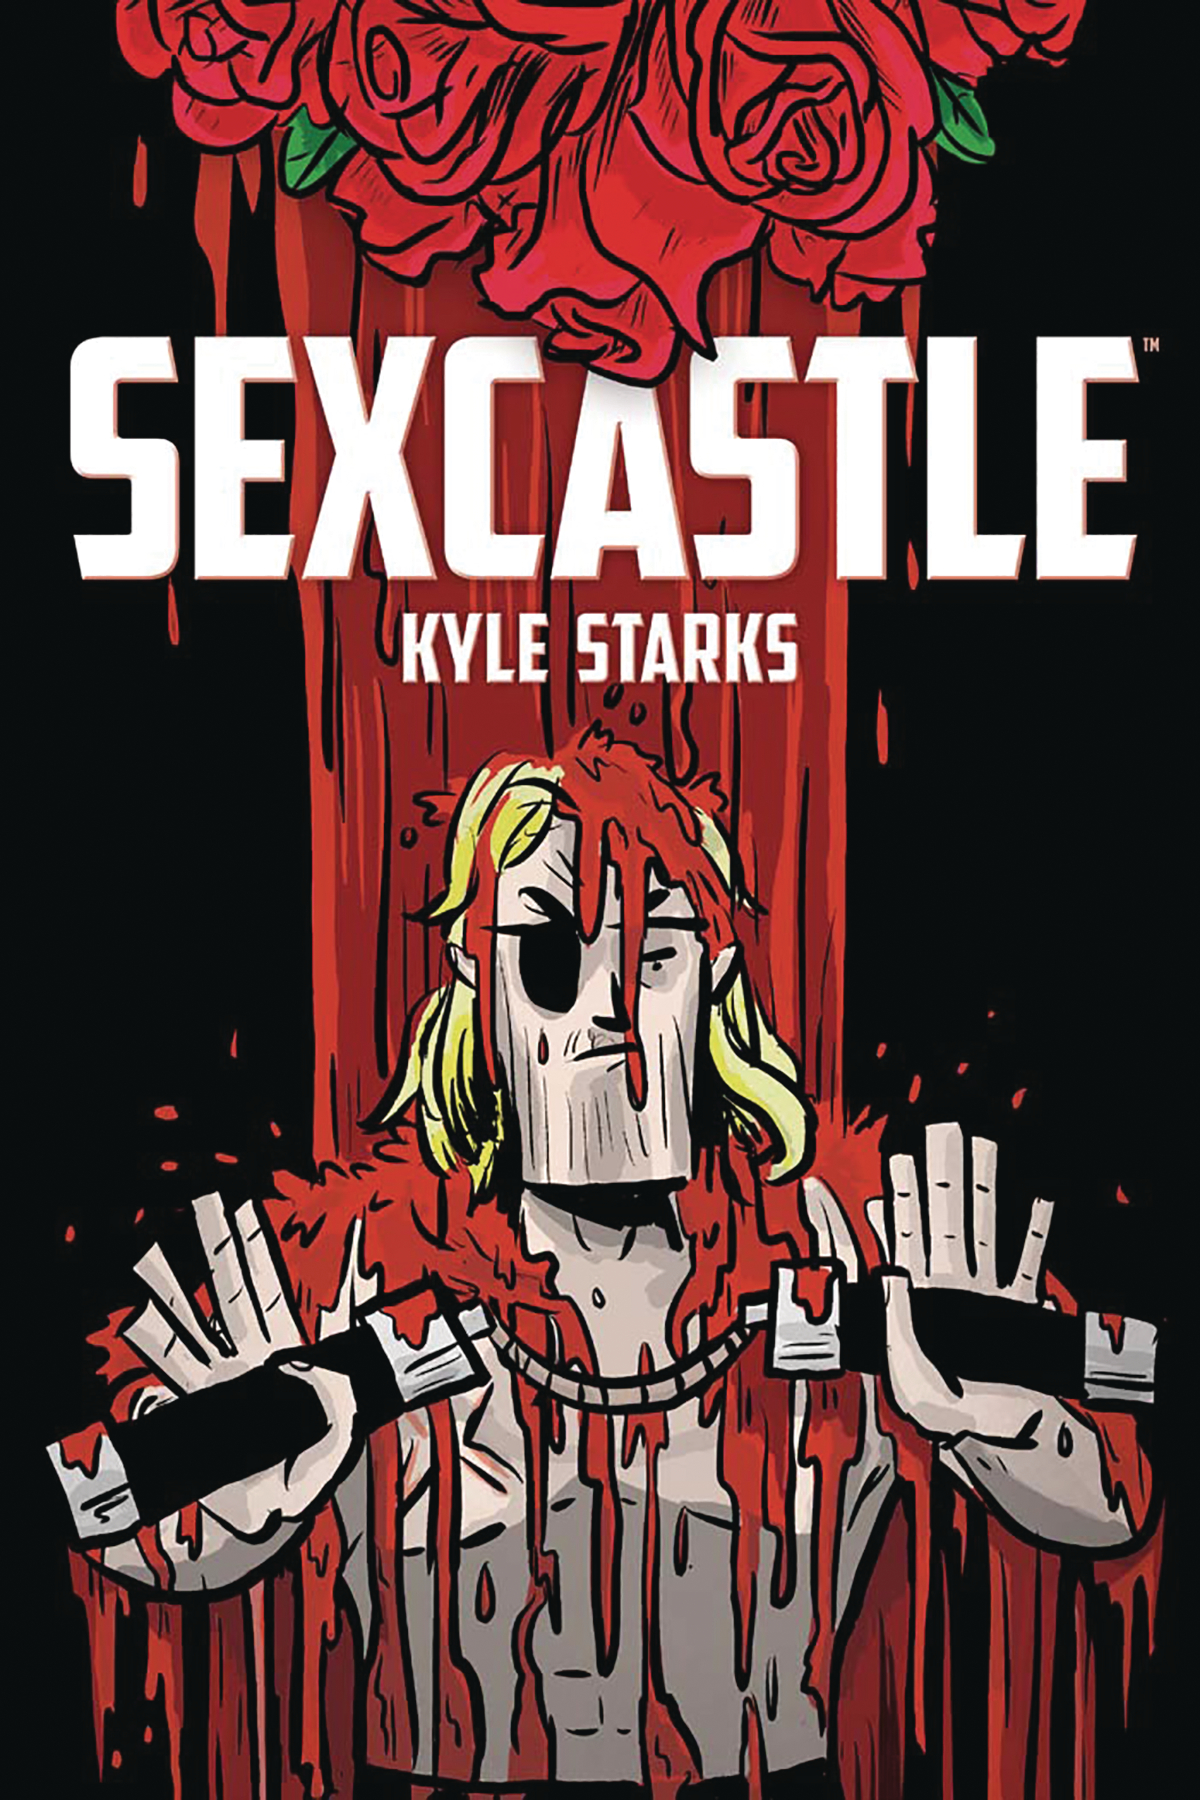 Sexcastle Graphic Novel (Mature)